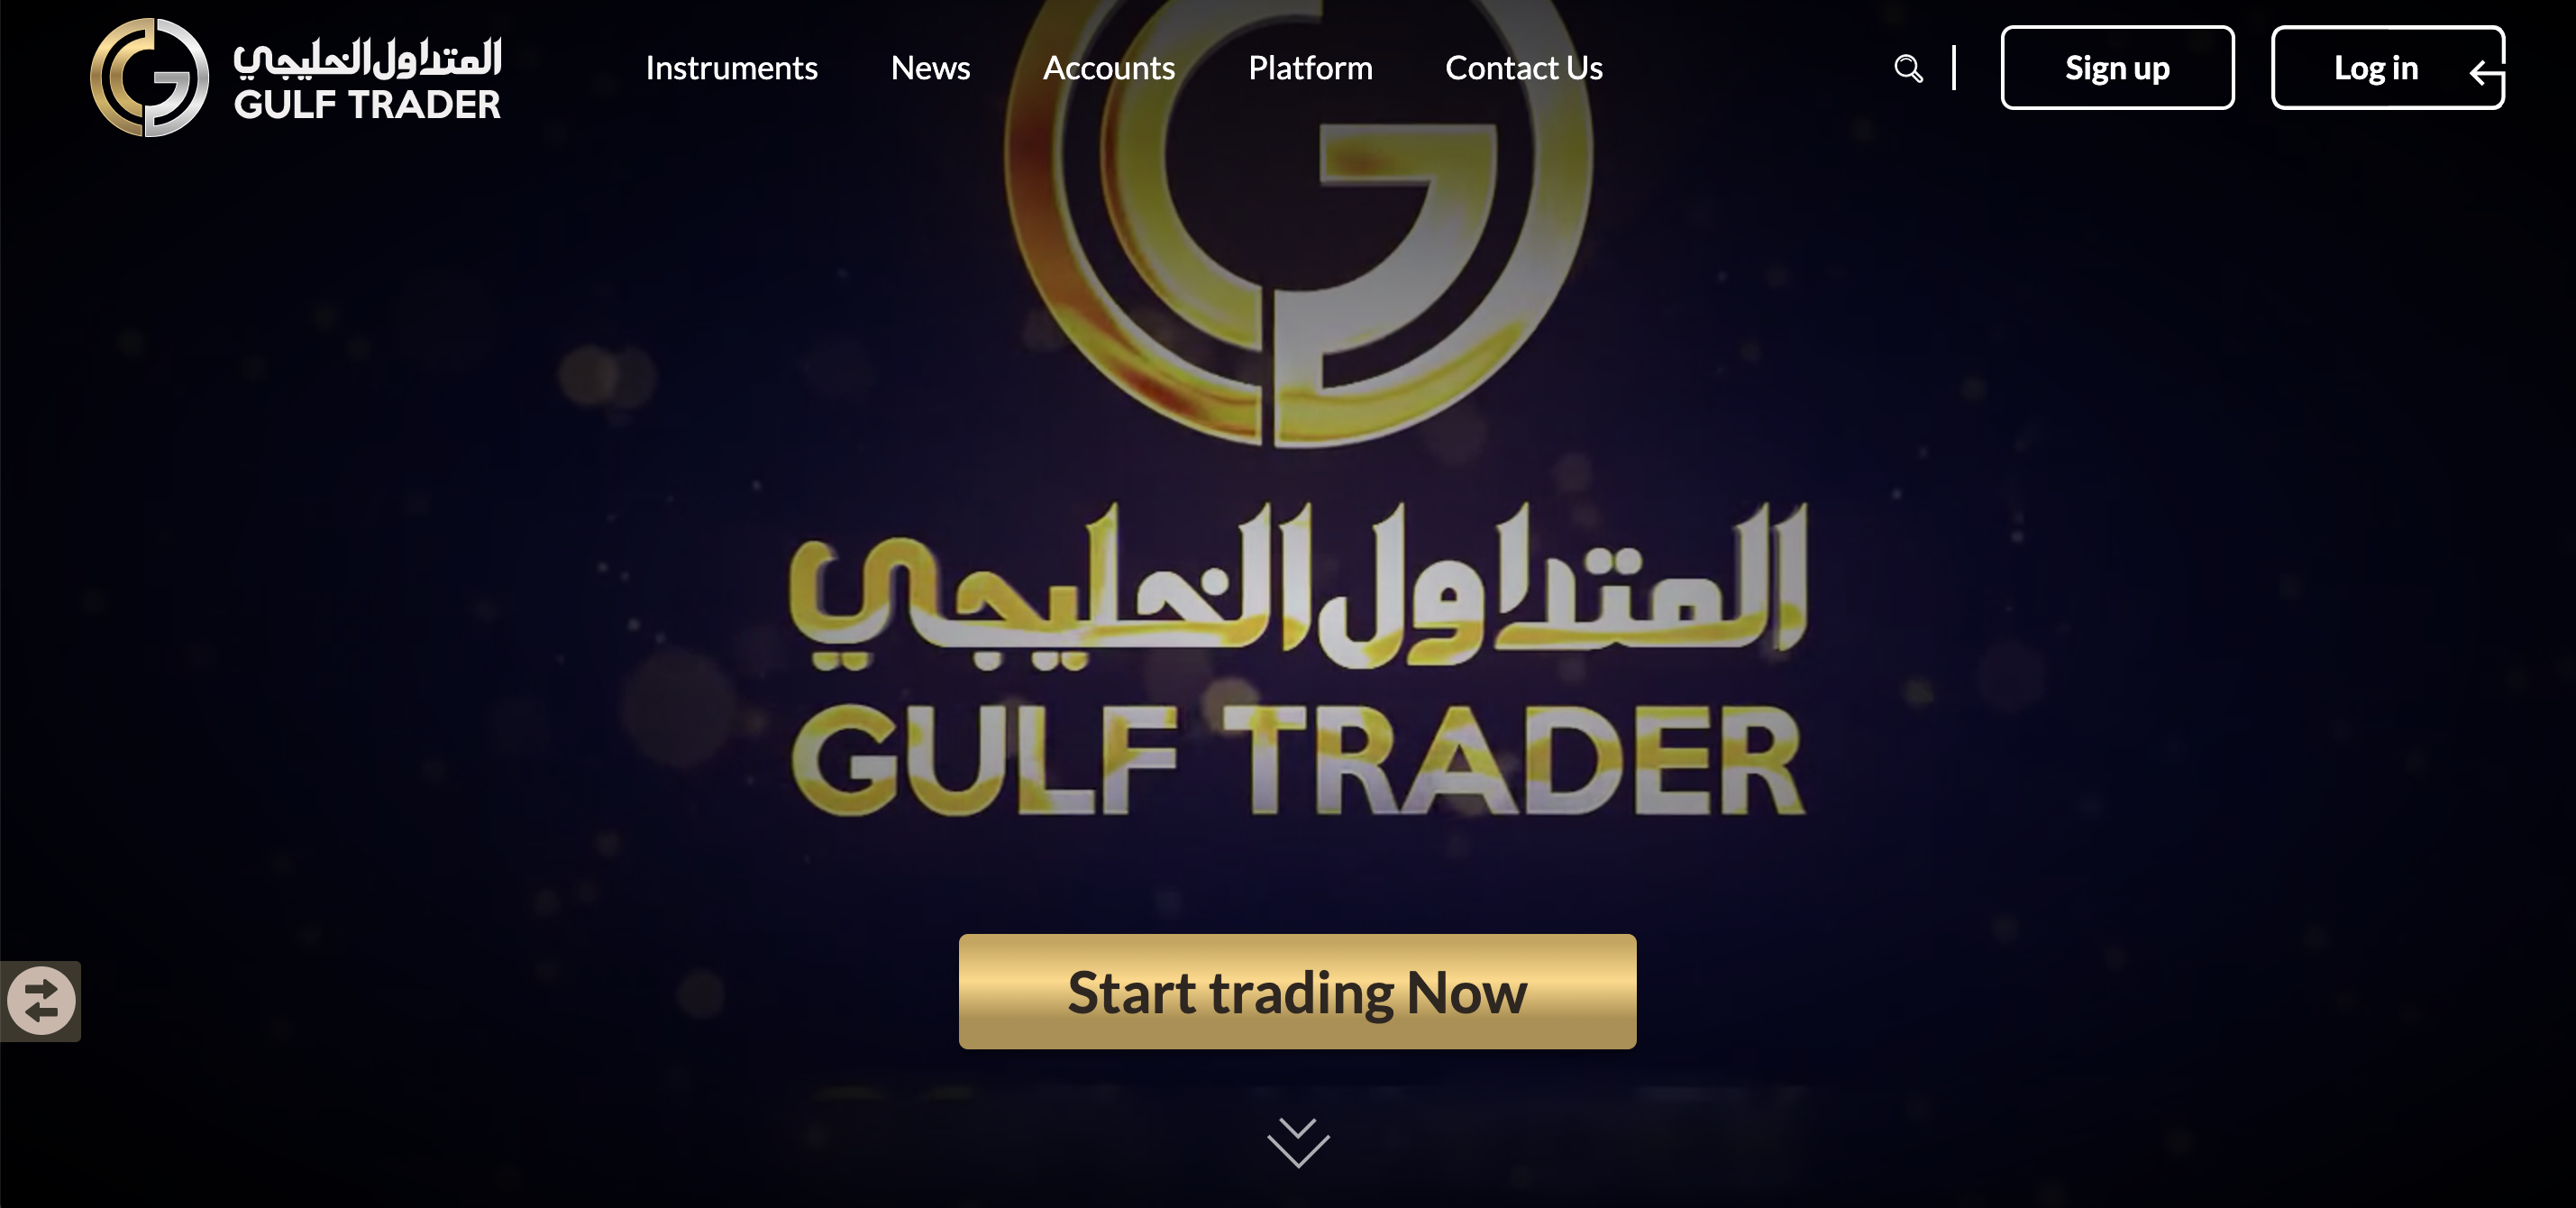 Gulf Trader website